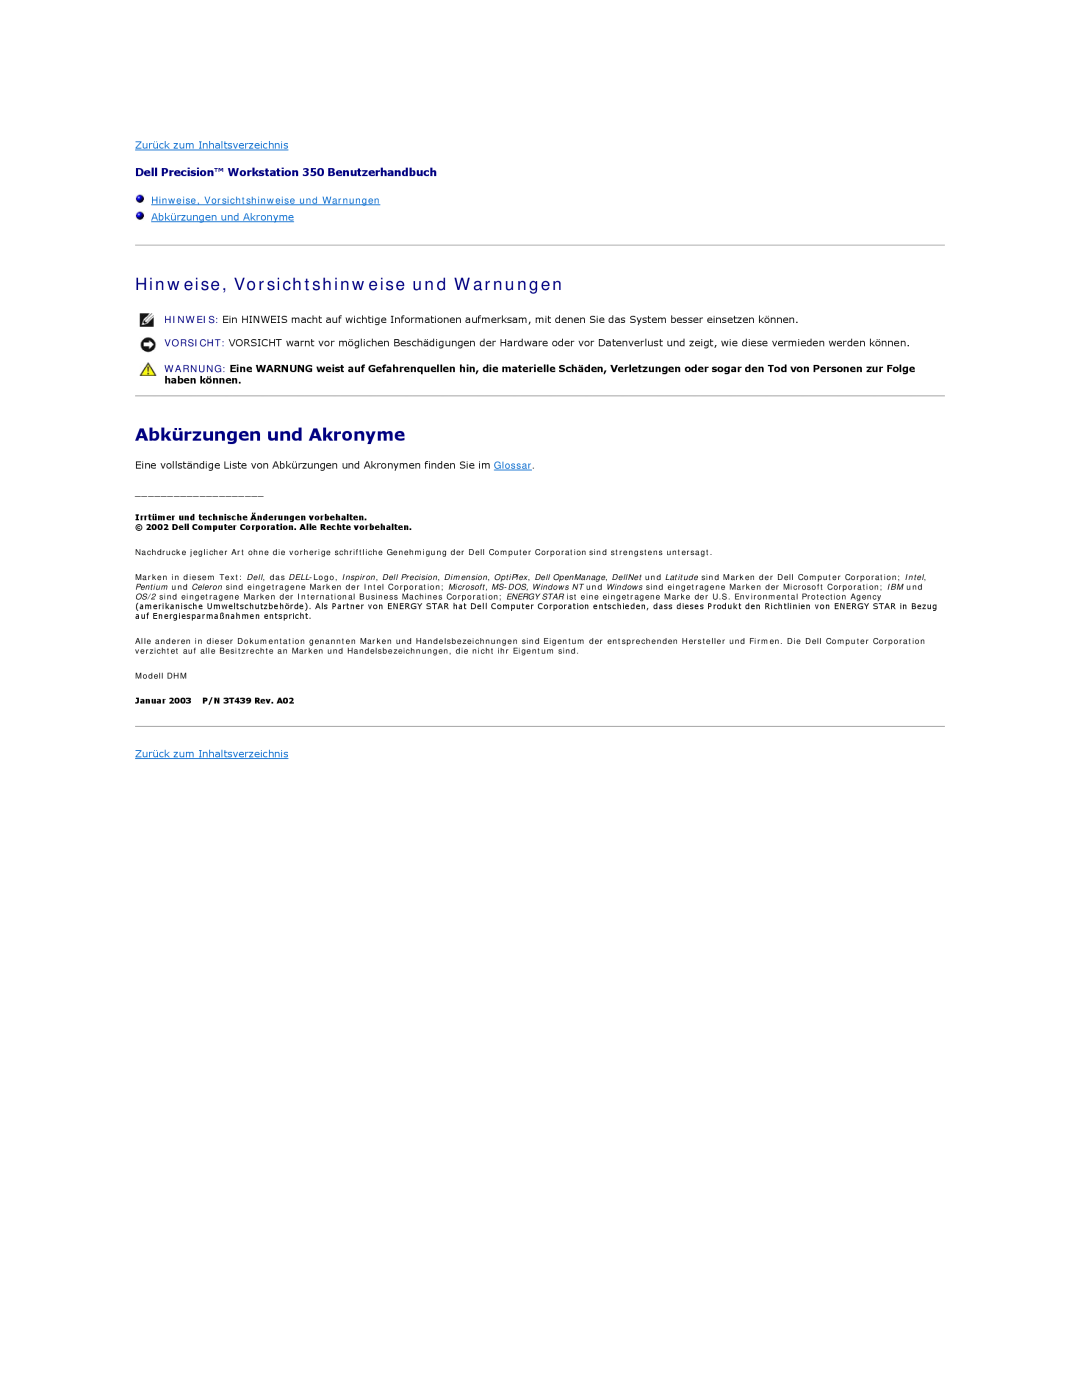 Dell 350 manual Hinweise, Vorsichtshinweise und Warnungen, Abkürzungen und Akronyme, Zurück zum Inhaltsverzeichnis 